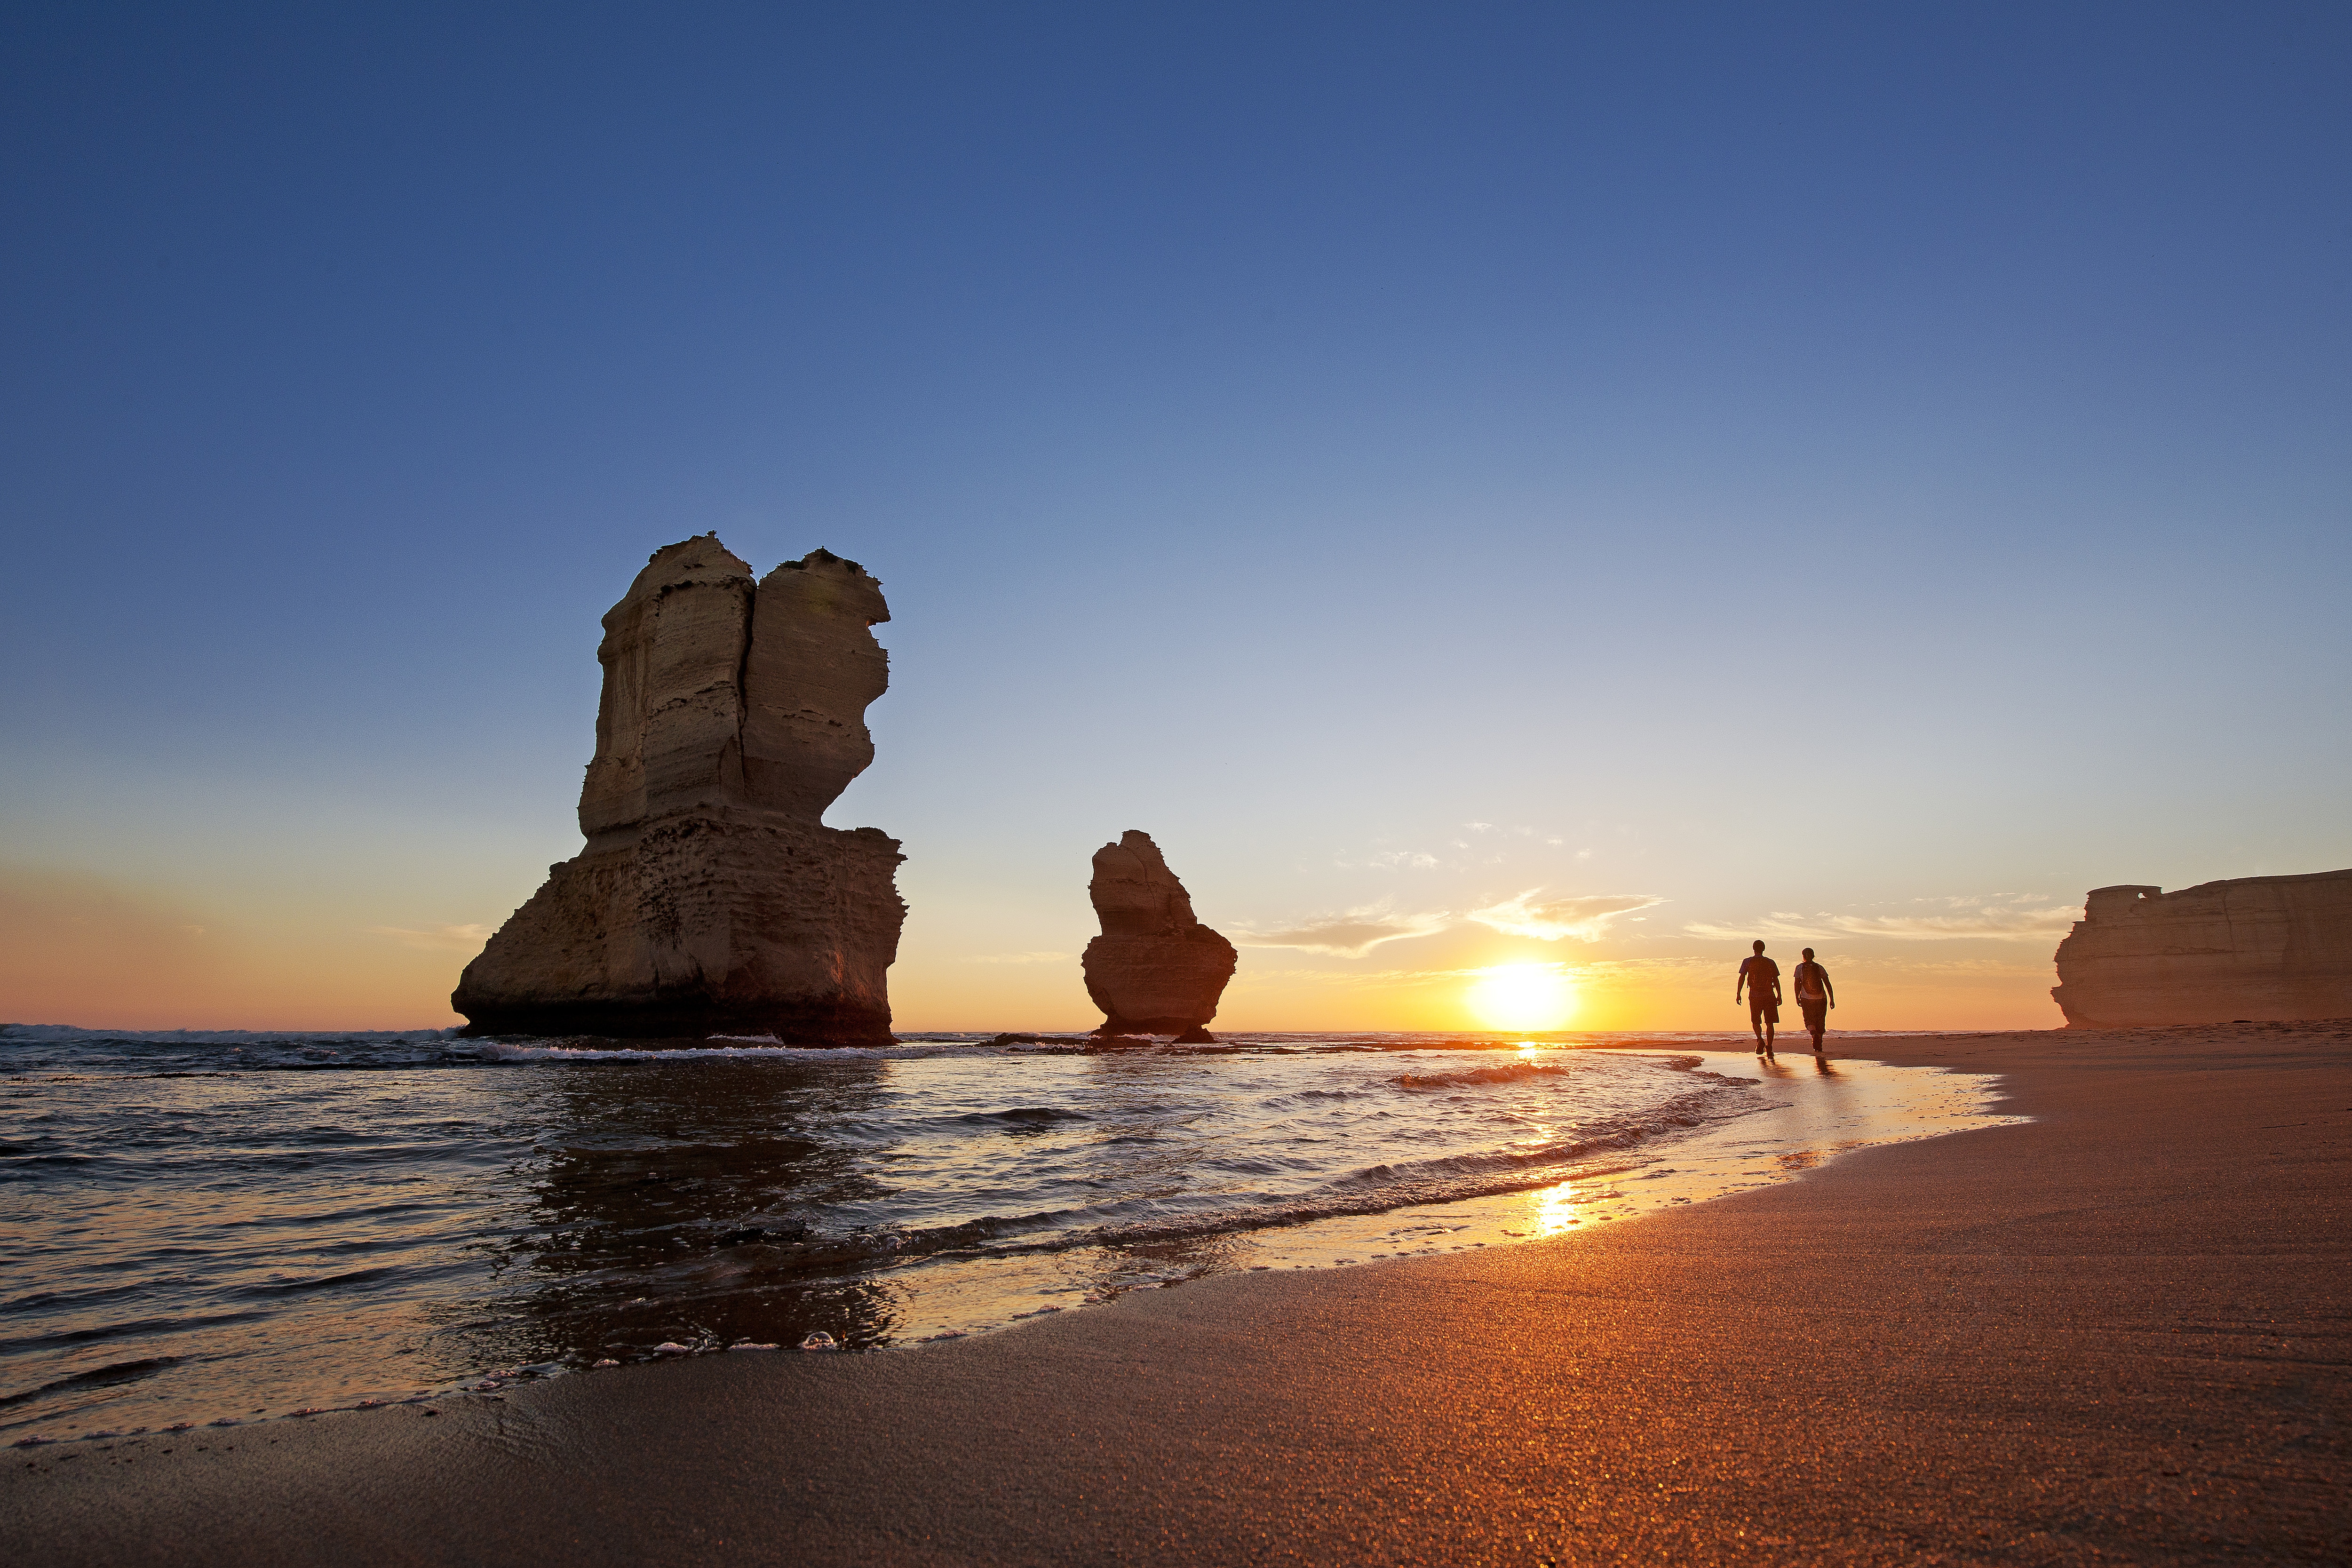 på den anden side, komme til syne Monarch Australia's top natural attractions - Tourism Australia